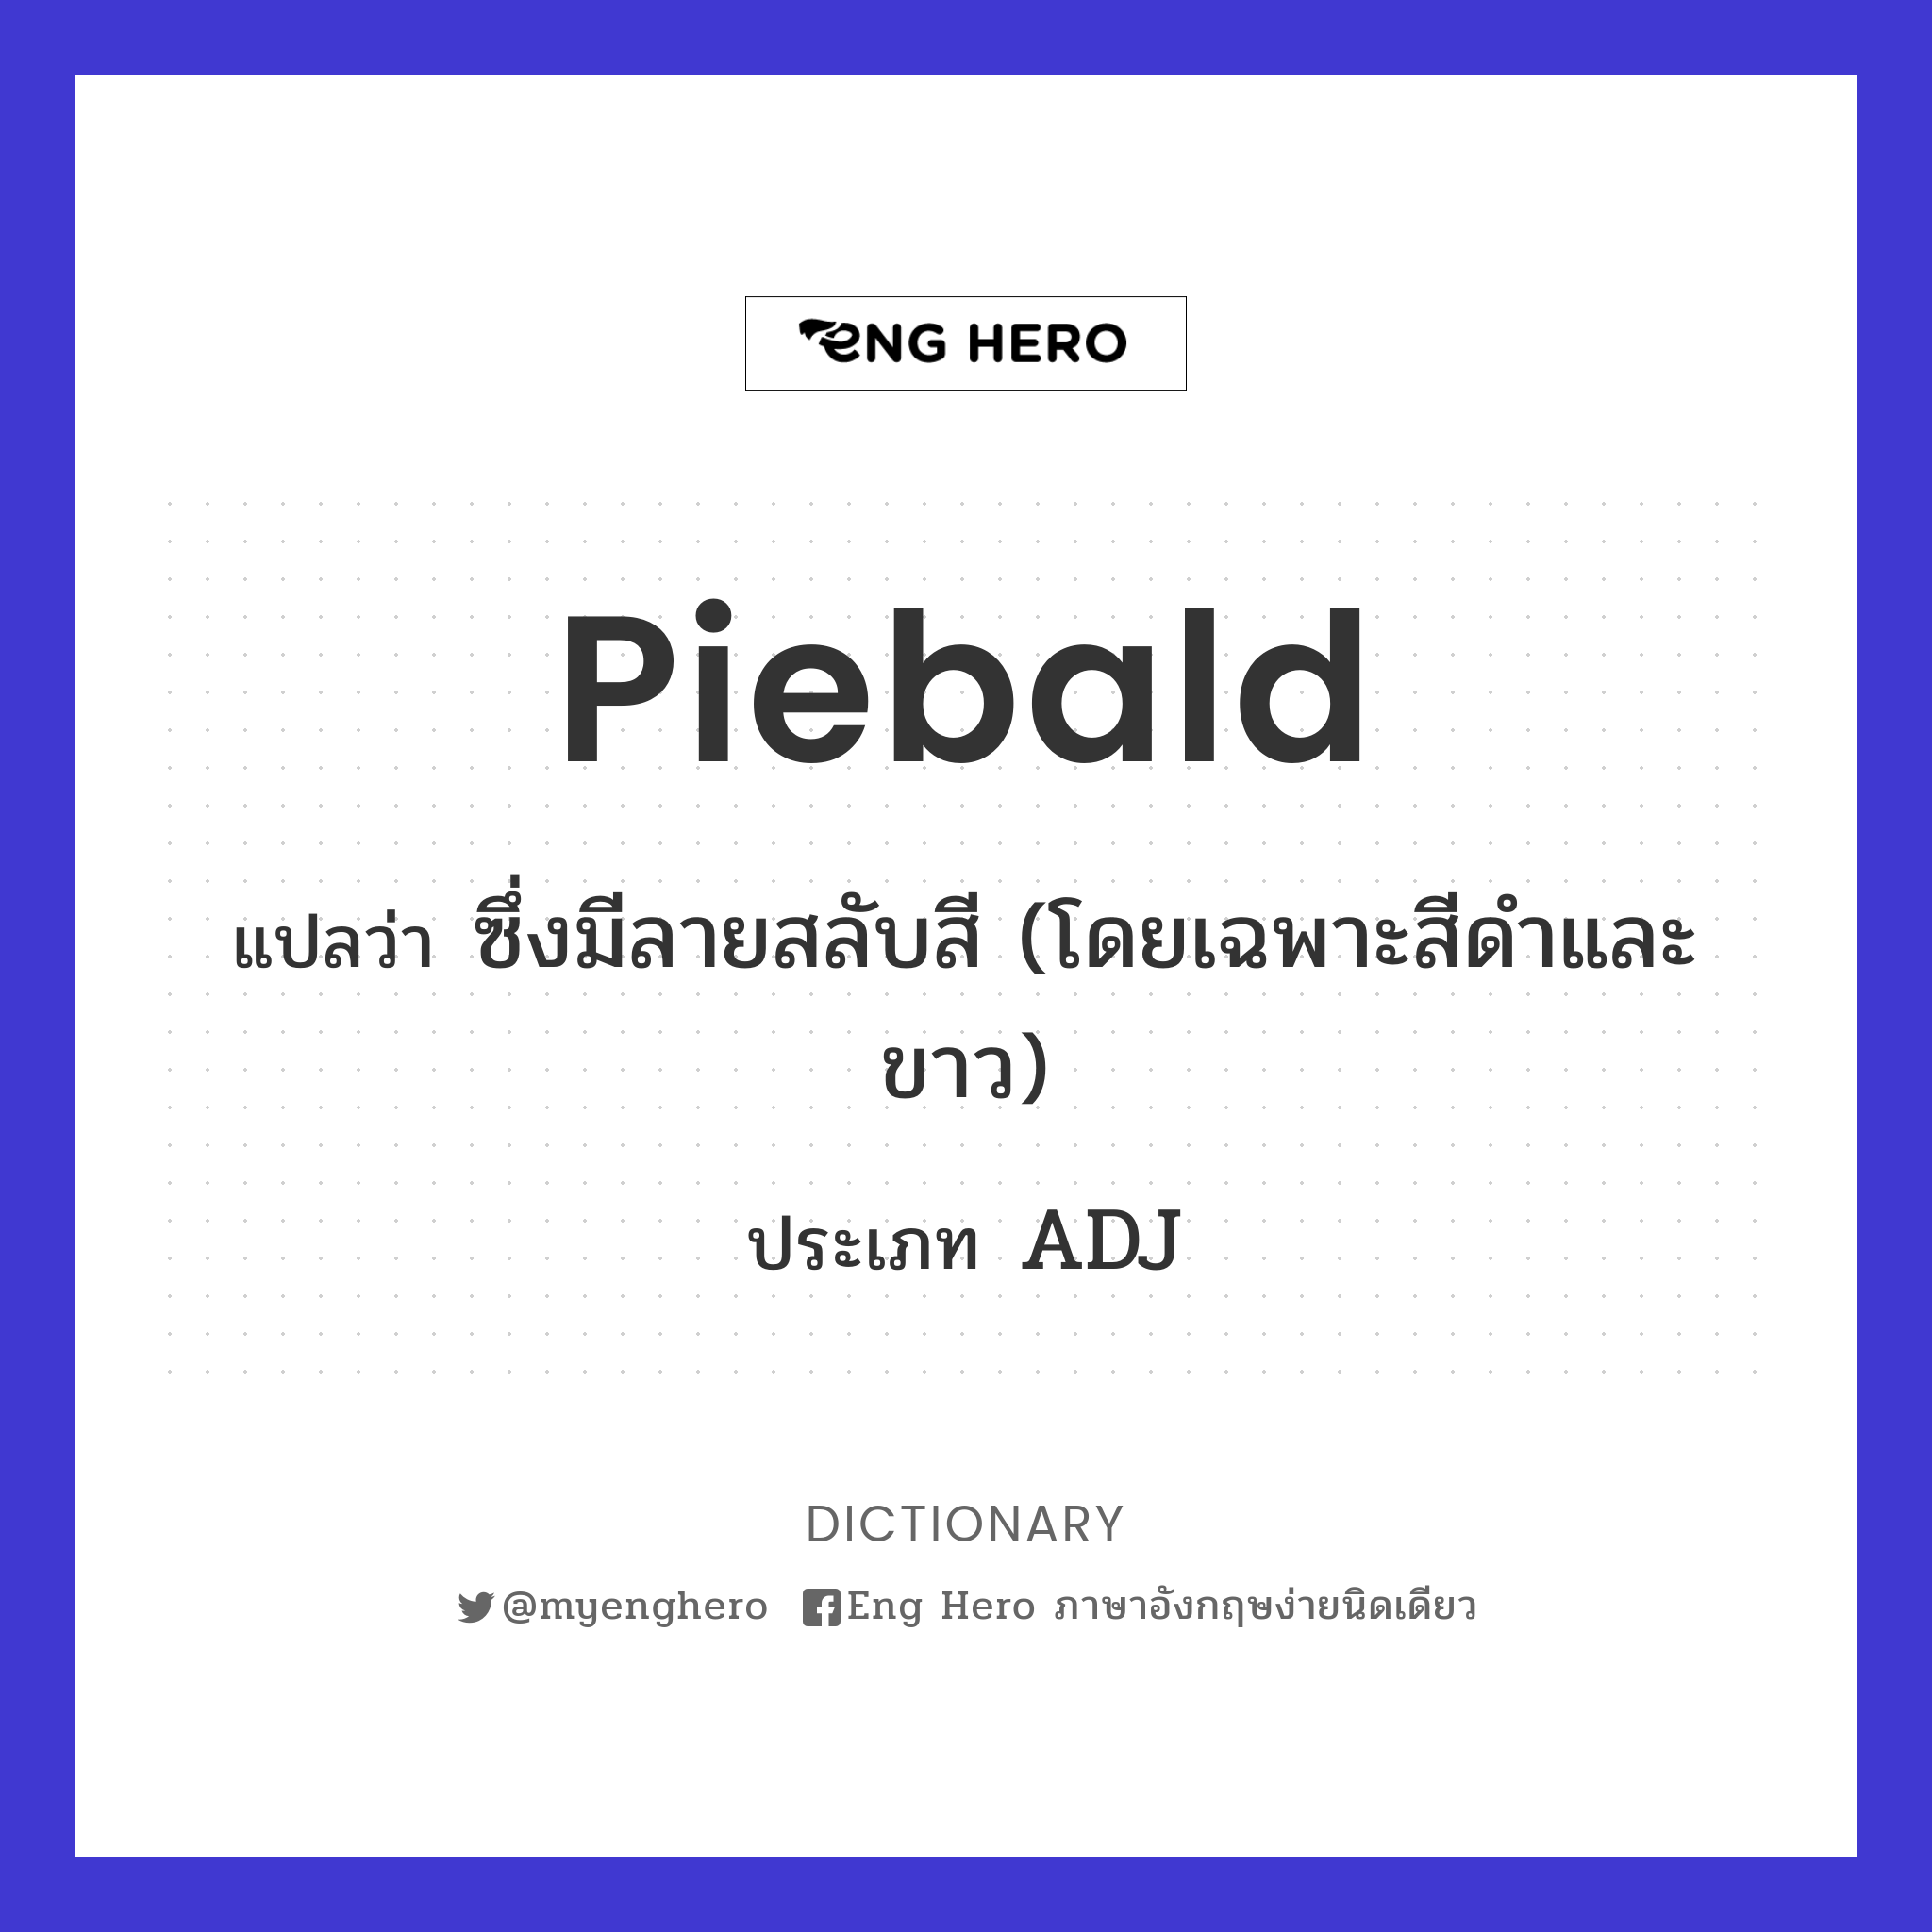 Piebald แปลว่า ซึ่งมีลายสลับสี (โดยเฉพาะสีดำและขาว) | Eng Hero เรียน ภาษาอังกฤษ ออนไลน์ ฟรี